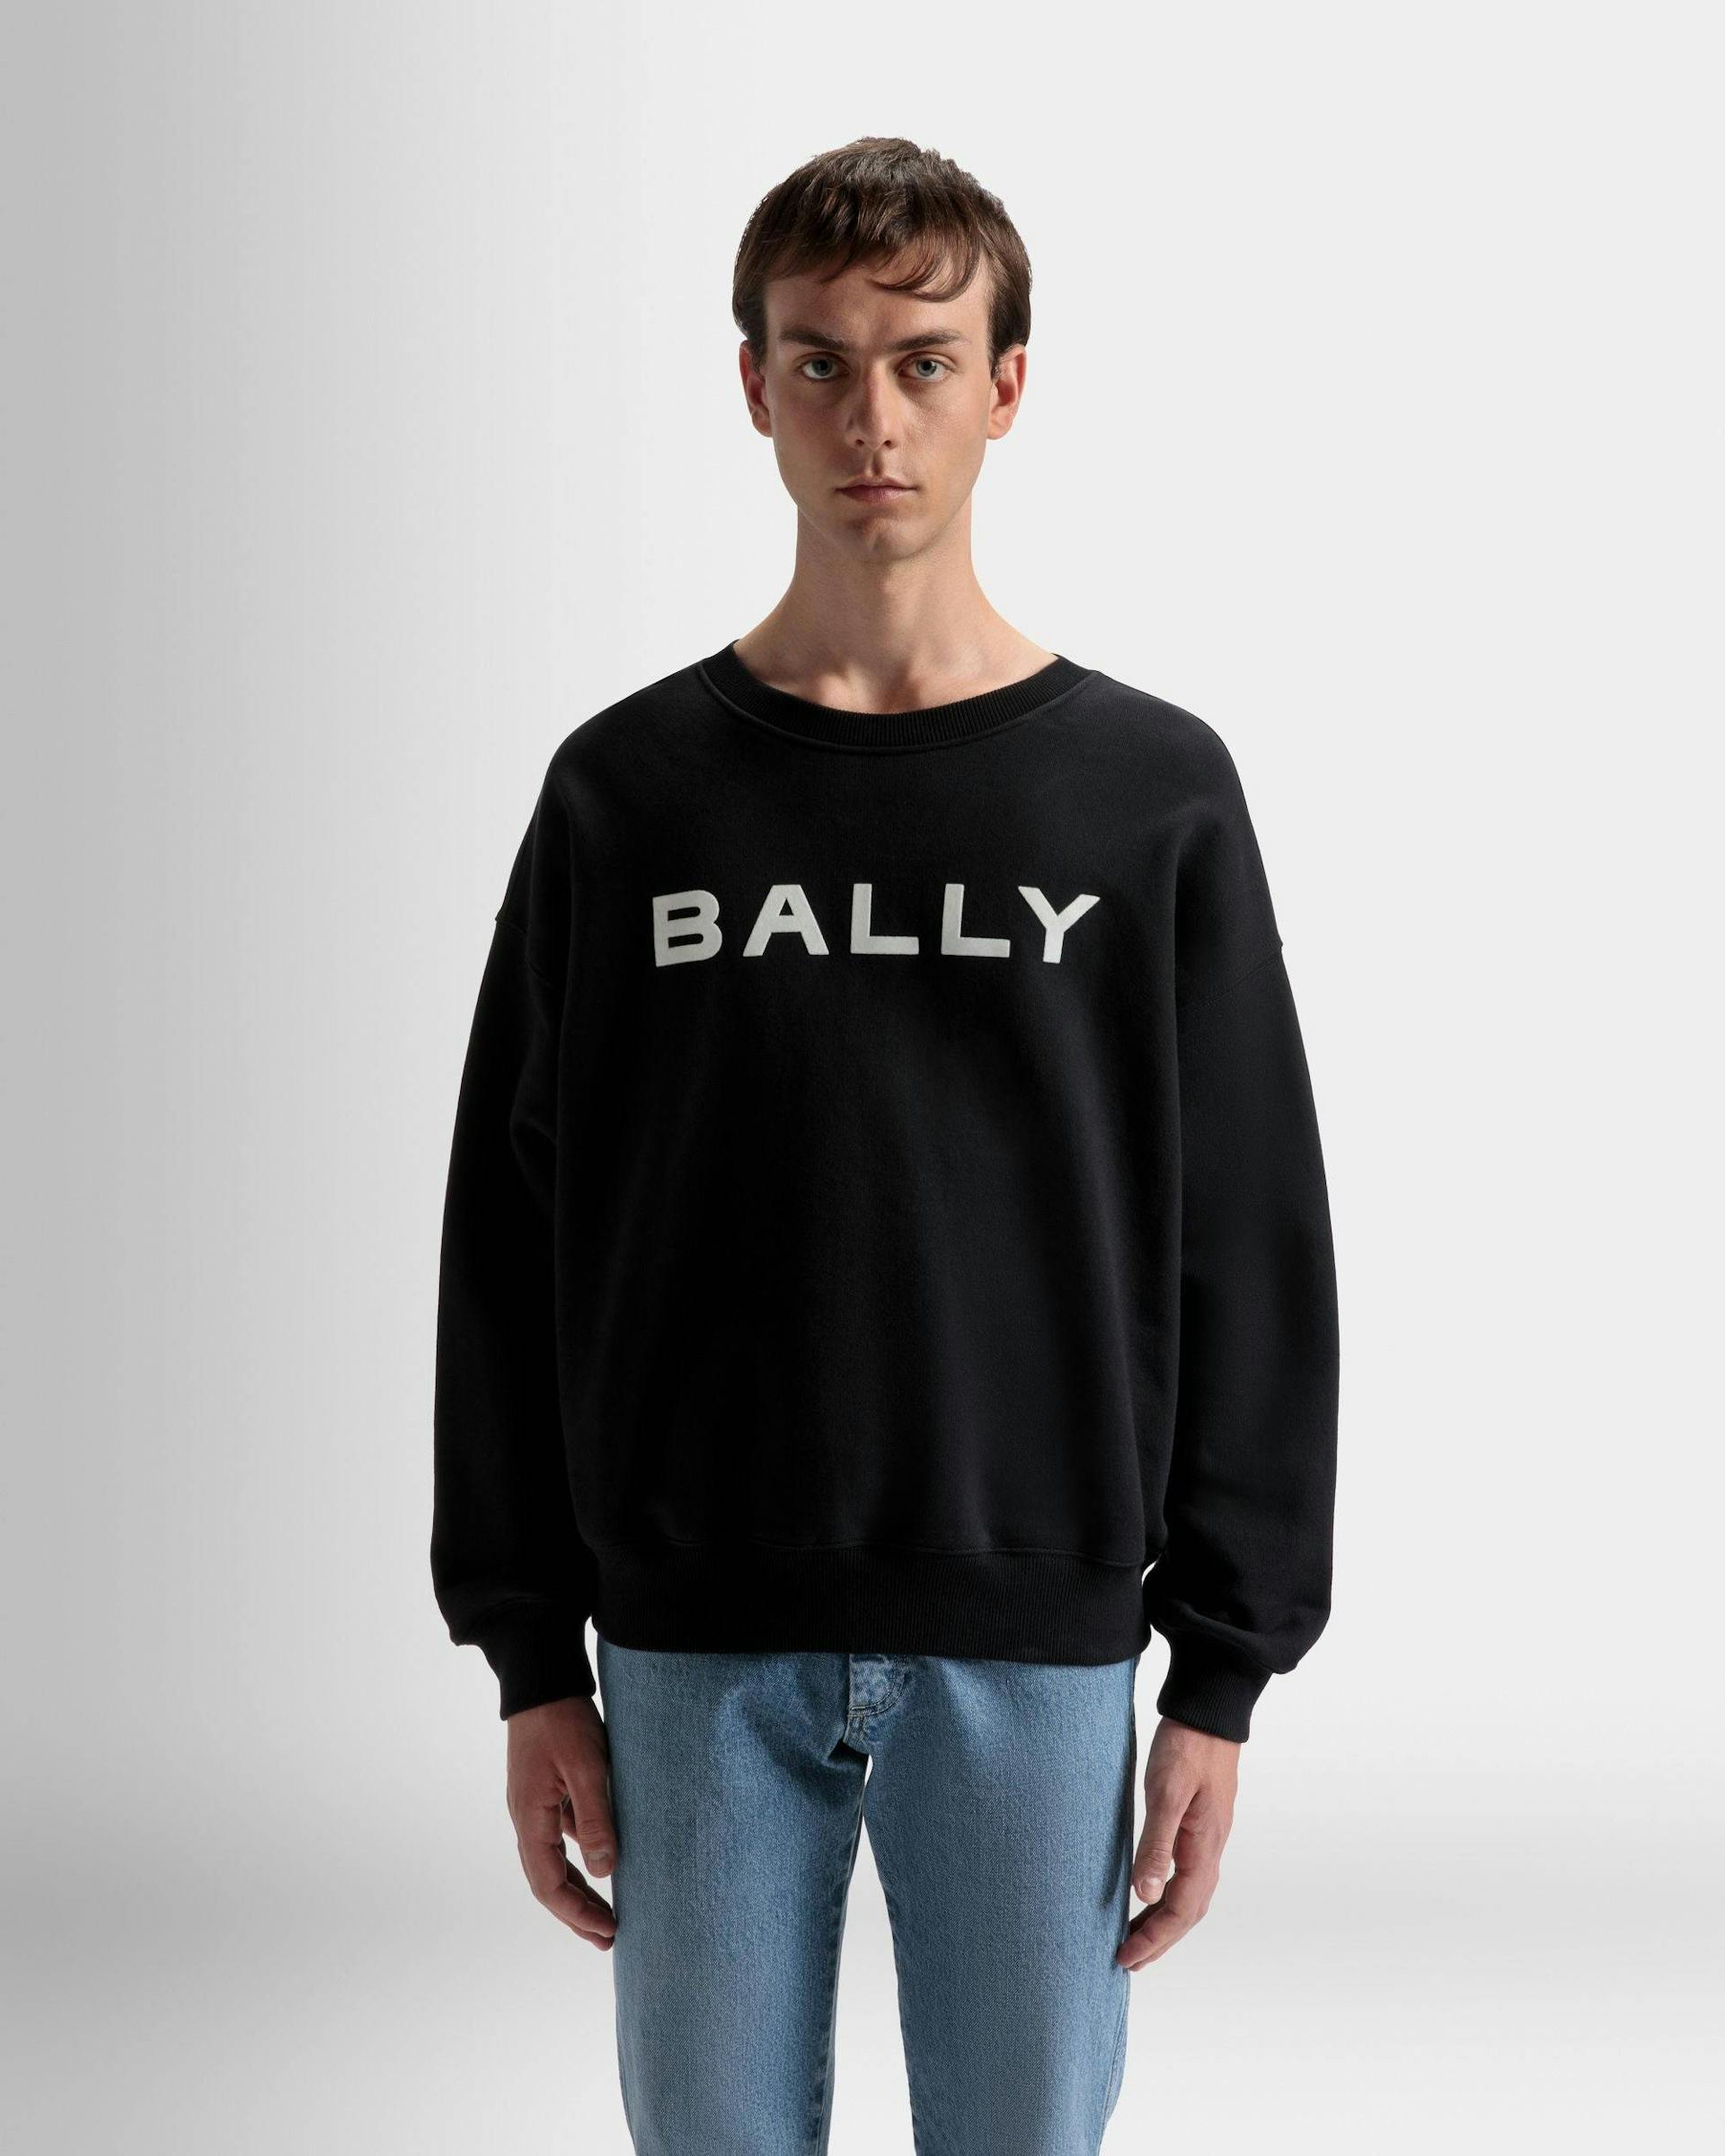 ロゴ スウェットシャツ ブラック コットン - 男性 - Bally - 03